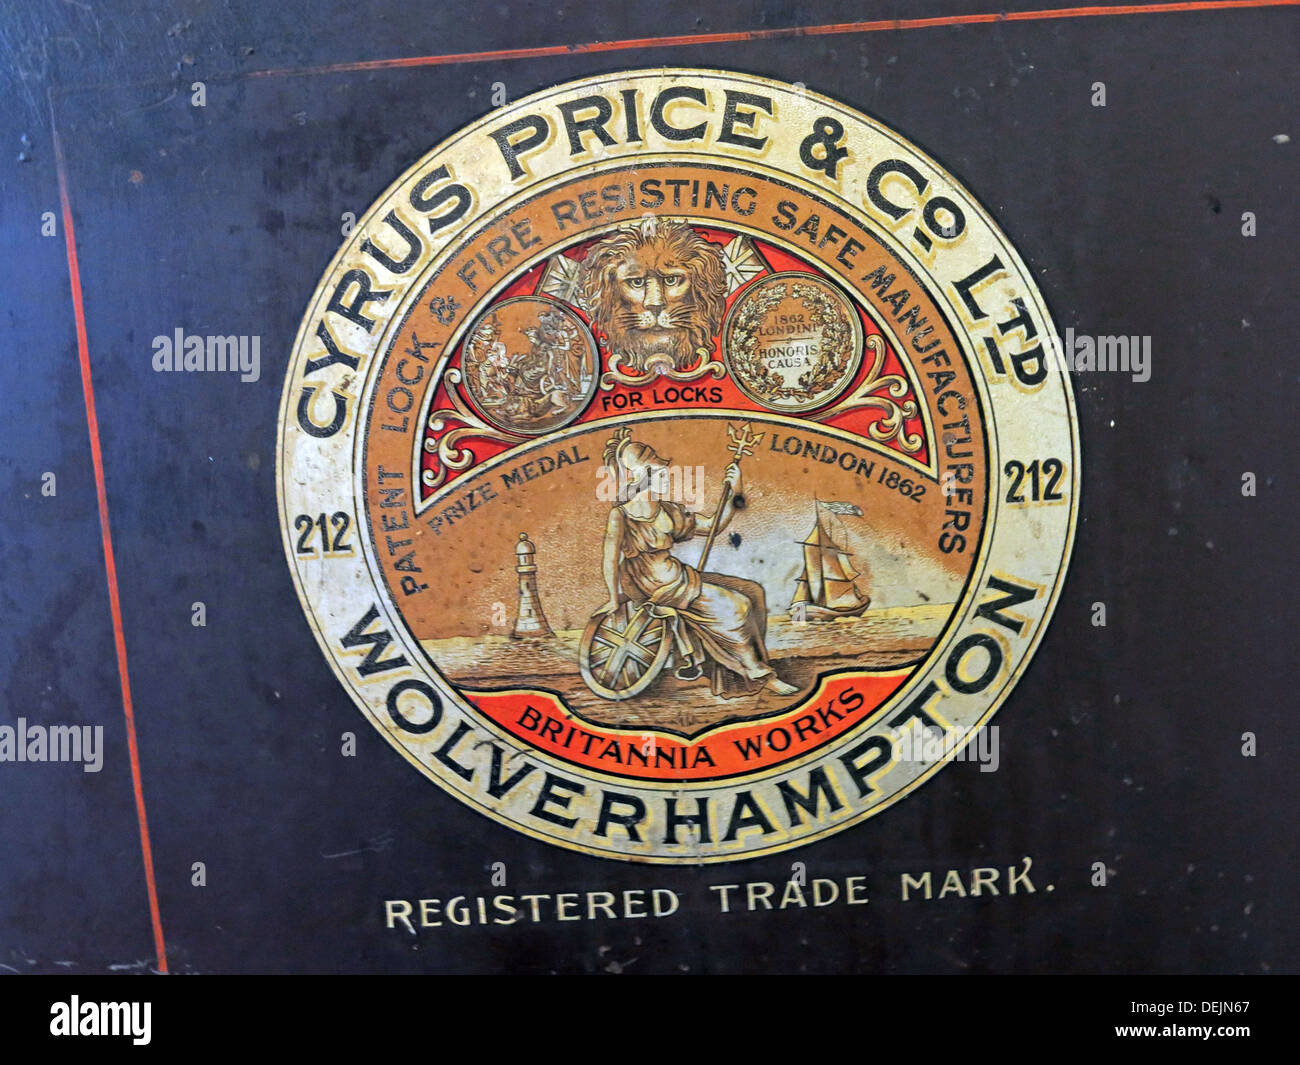 Label sûr de Cyrus Price & Co Ltd Wolverhampton 212 - marque déposée - Now Insafe Ltd Banque D'Images